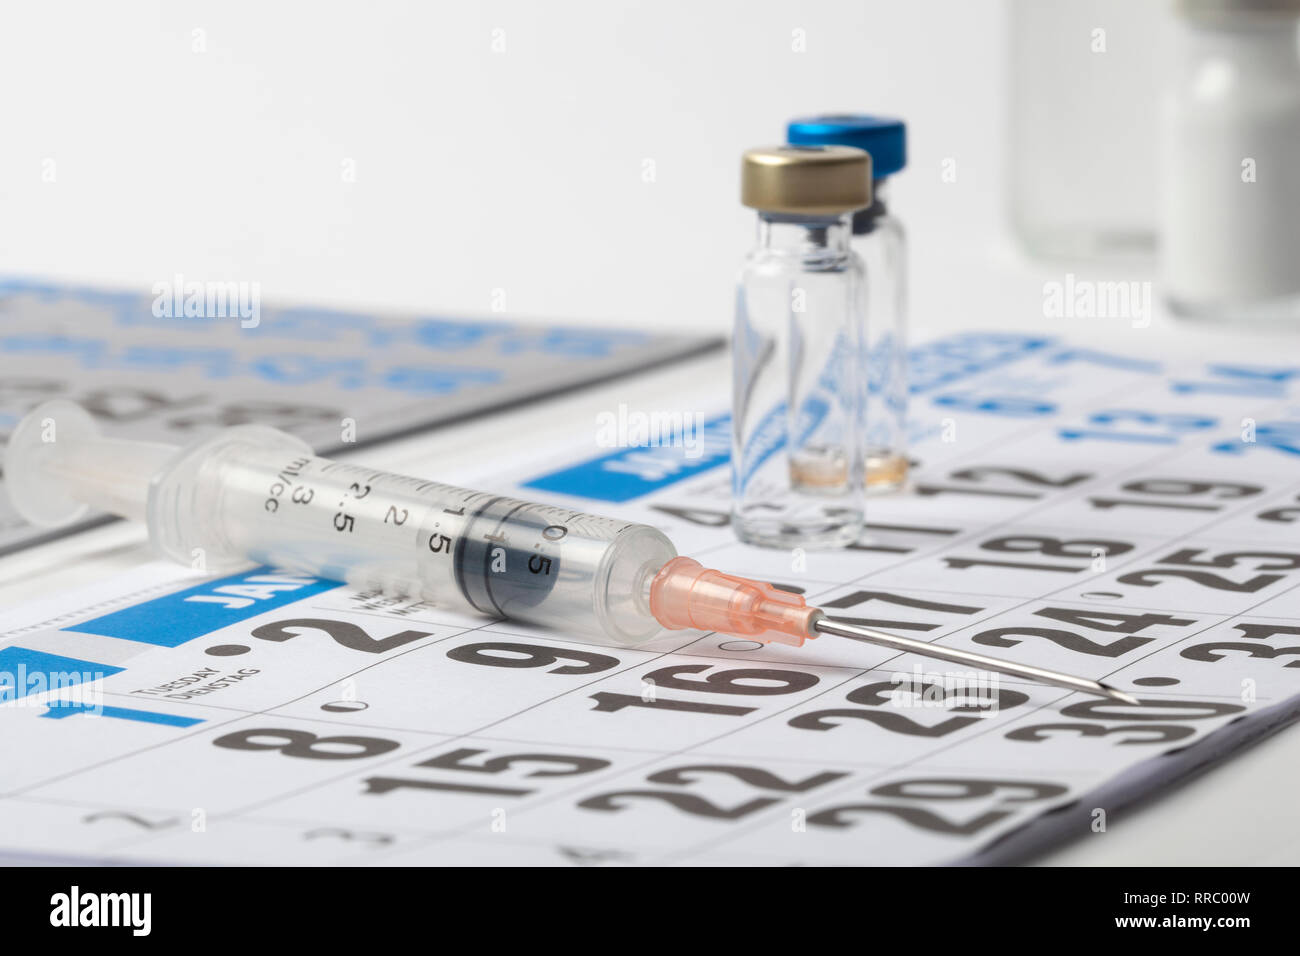 Parecchie fiale trasparenti ampolle di un vaccino e la siringa su un foglio del diario Foto Stock